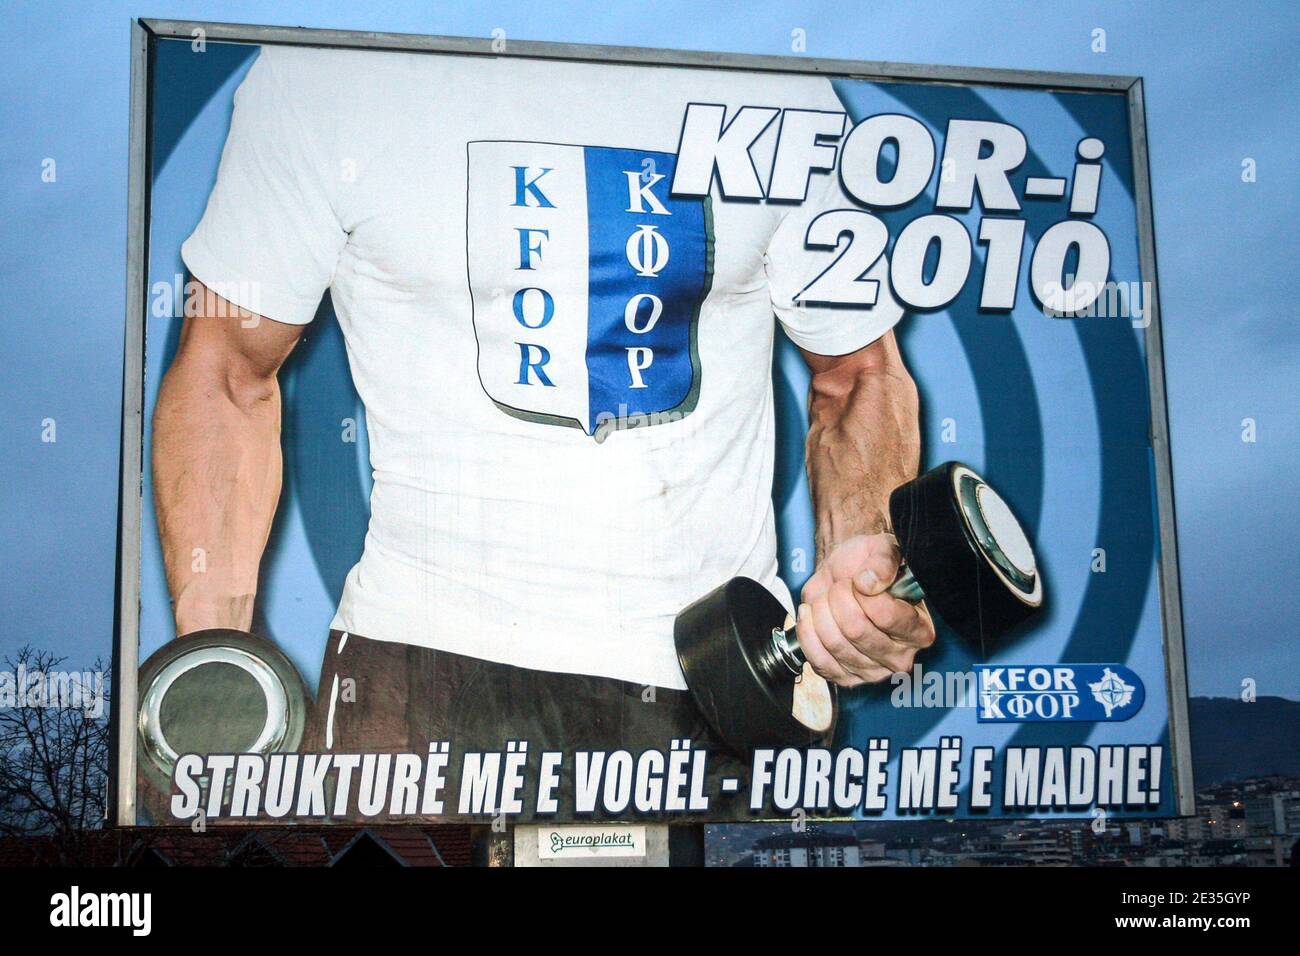 PRISHTINA, KOSOVO - 10. JANUAR 2010: Plakat der KFOR für ihre Struktur und Kraft für die NYE 2010. Die KFOR ist ein militärischer Friedensoperat der NATO Stockfoto